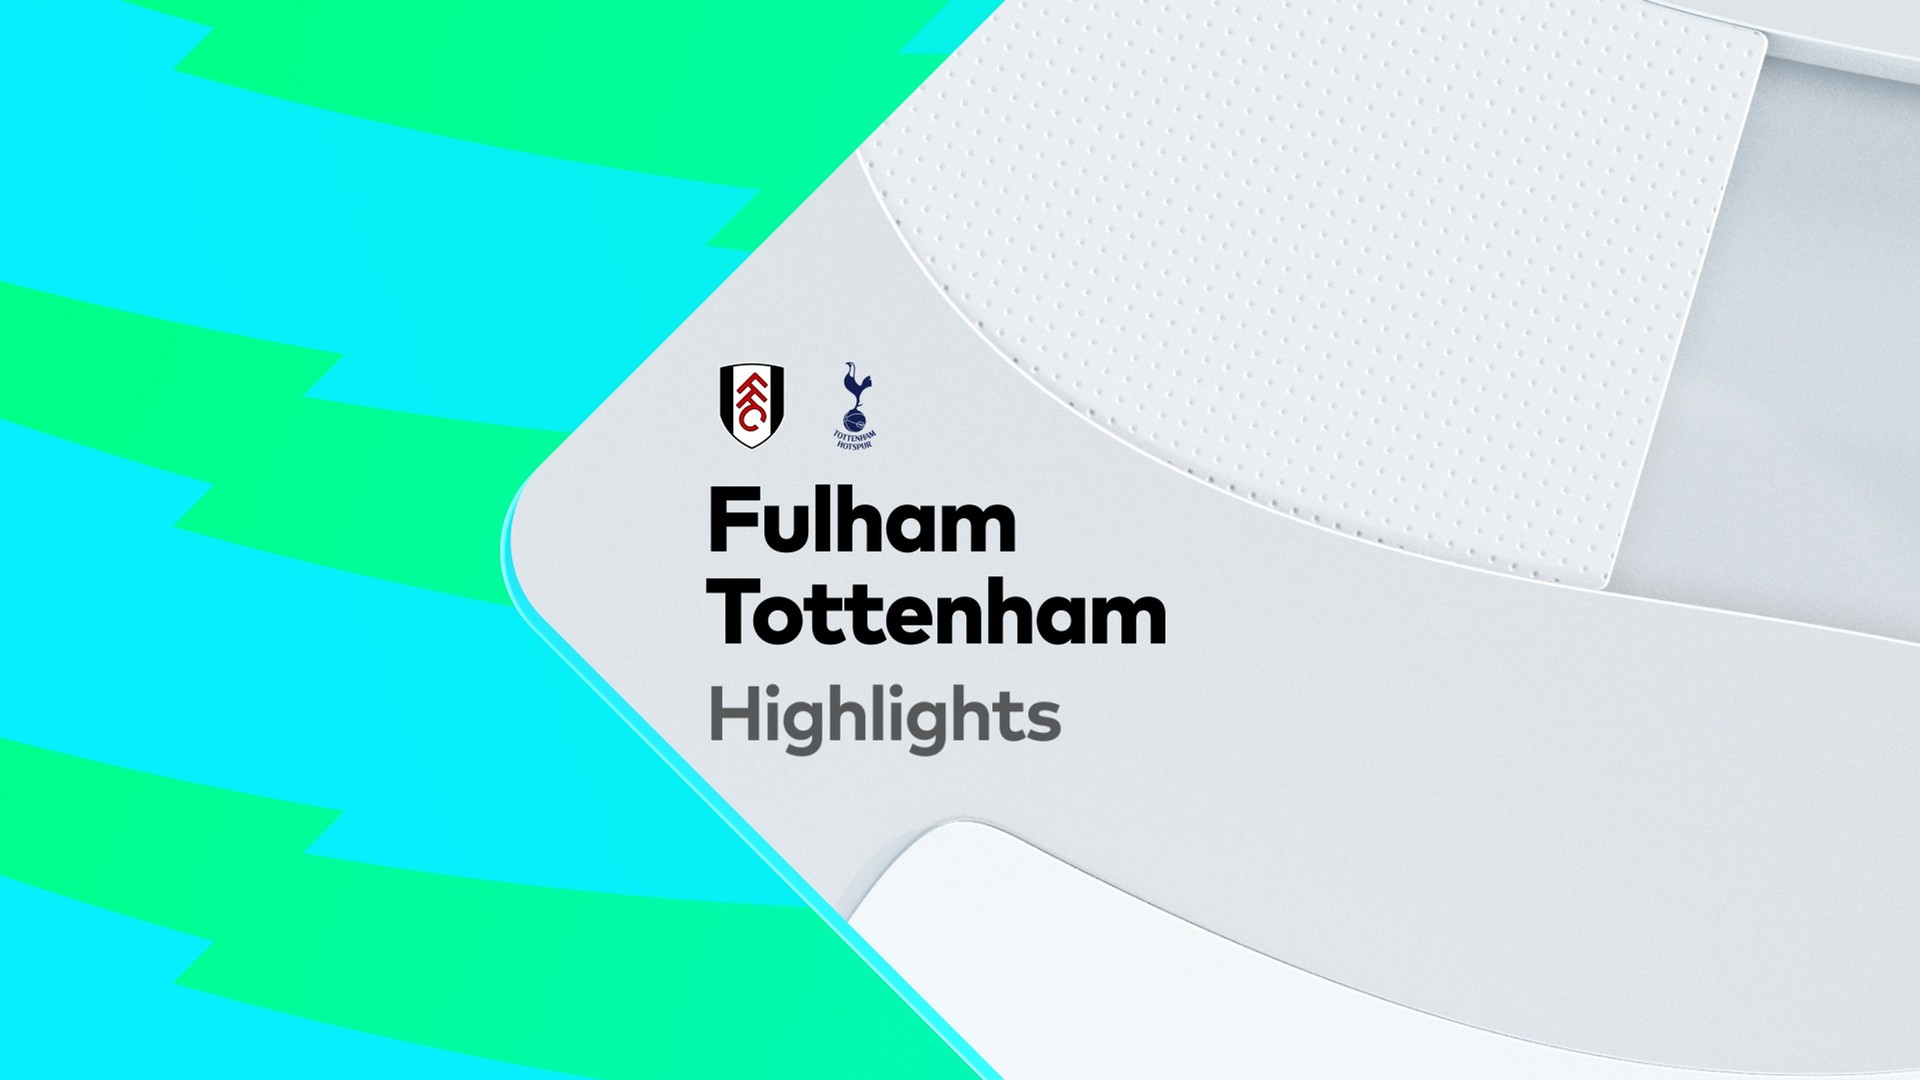 ungdomskriminalitet mulighed ledig stilling Highlights: Fulham v Tottenham Hotspur-Premier League 23-01-2023